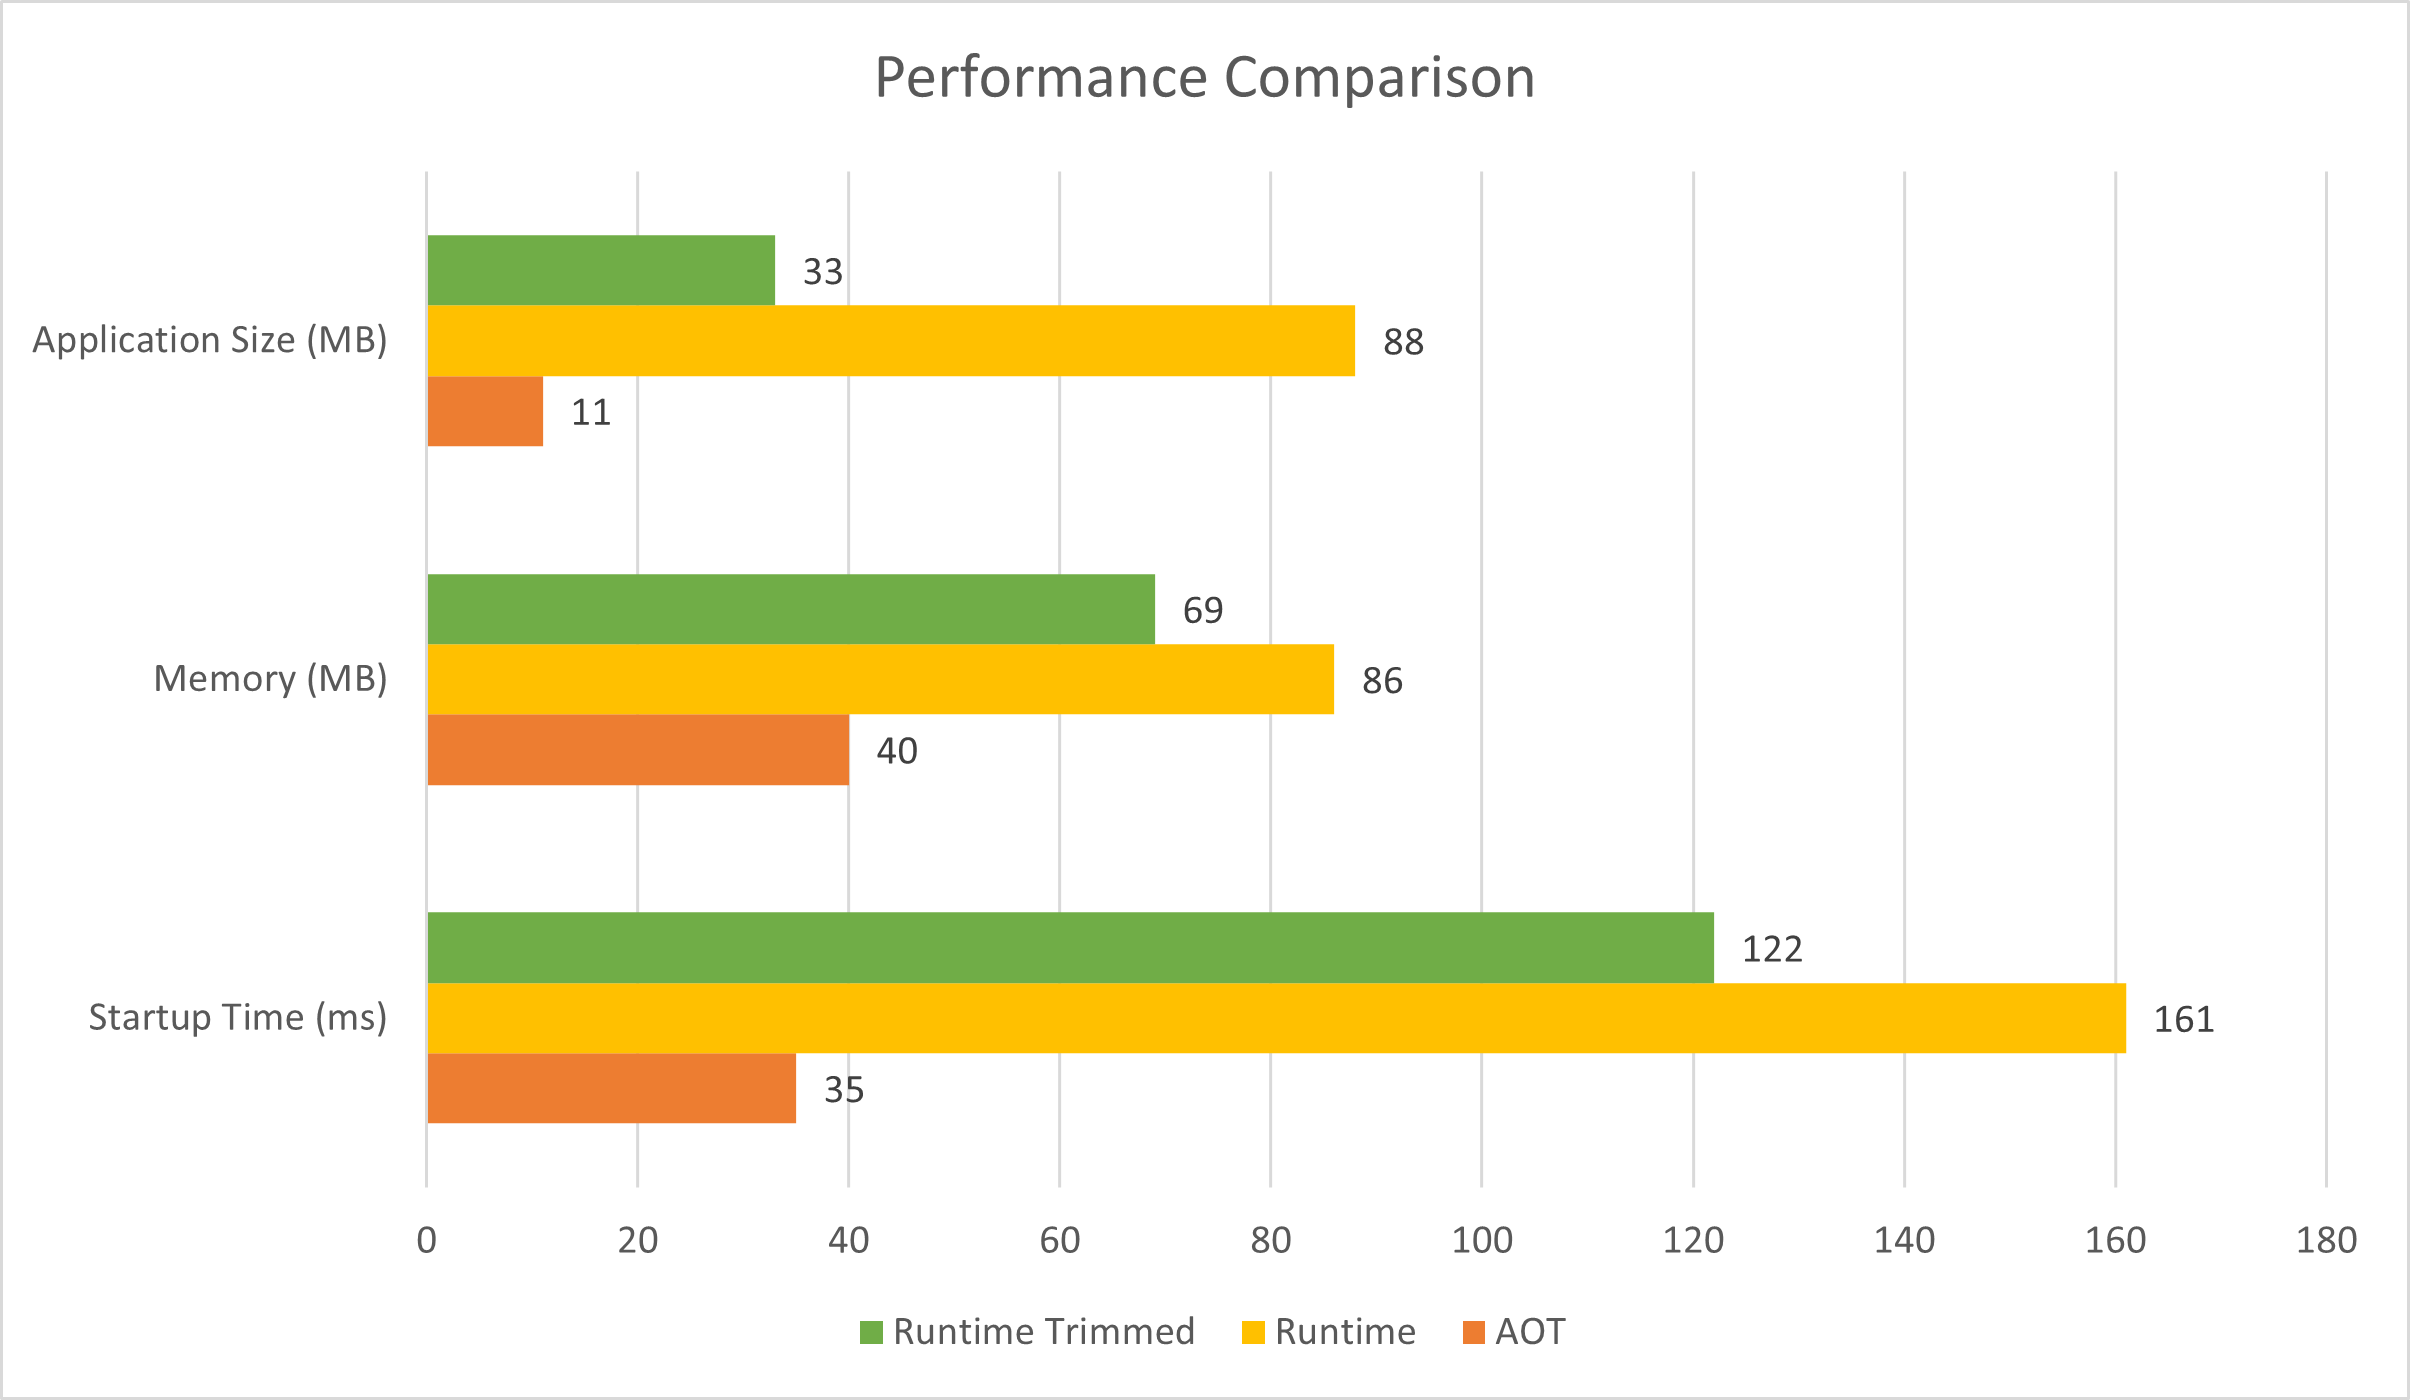 Graf znázorňující porovnání velikosti aplikace, využití paměti a metrik doby spuštění publikované aplikace AOT, oříznuté aplikace runtime a neskutečněné aplikace modulu runtime